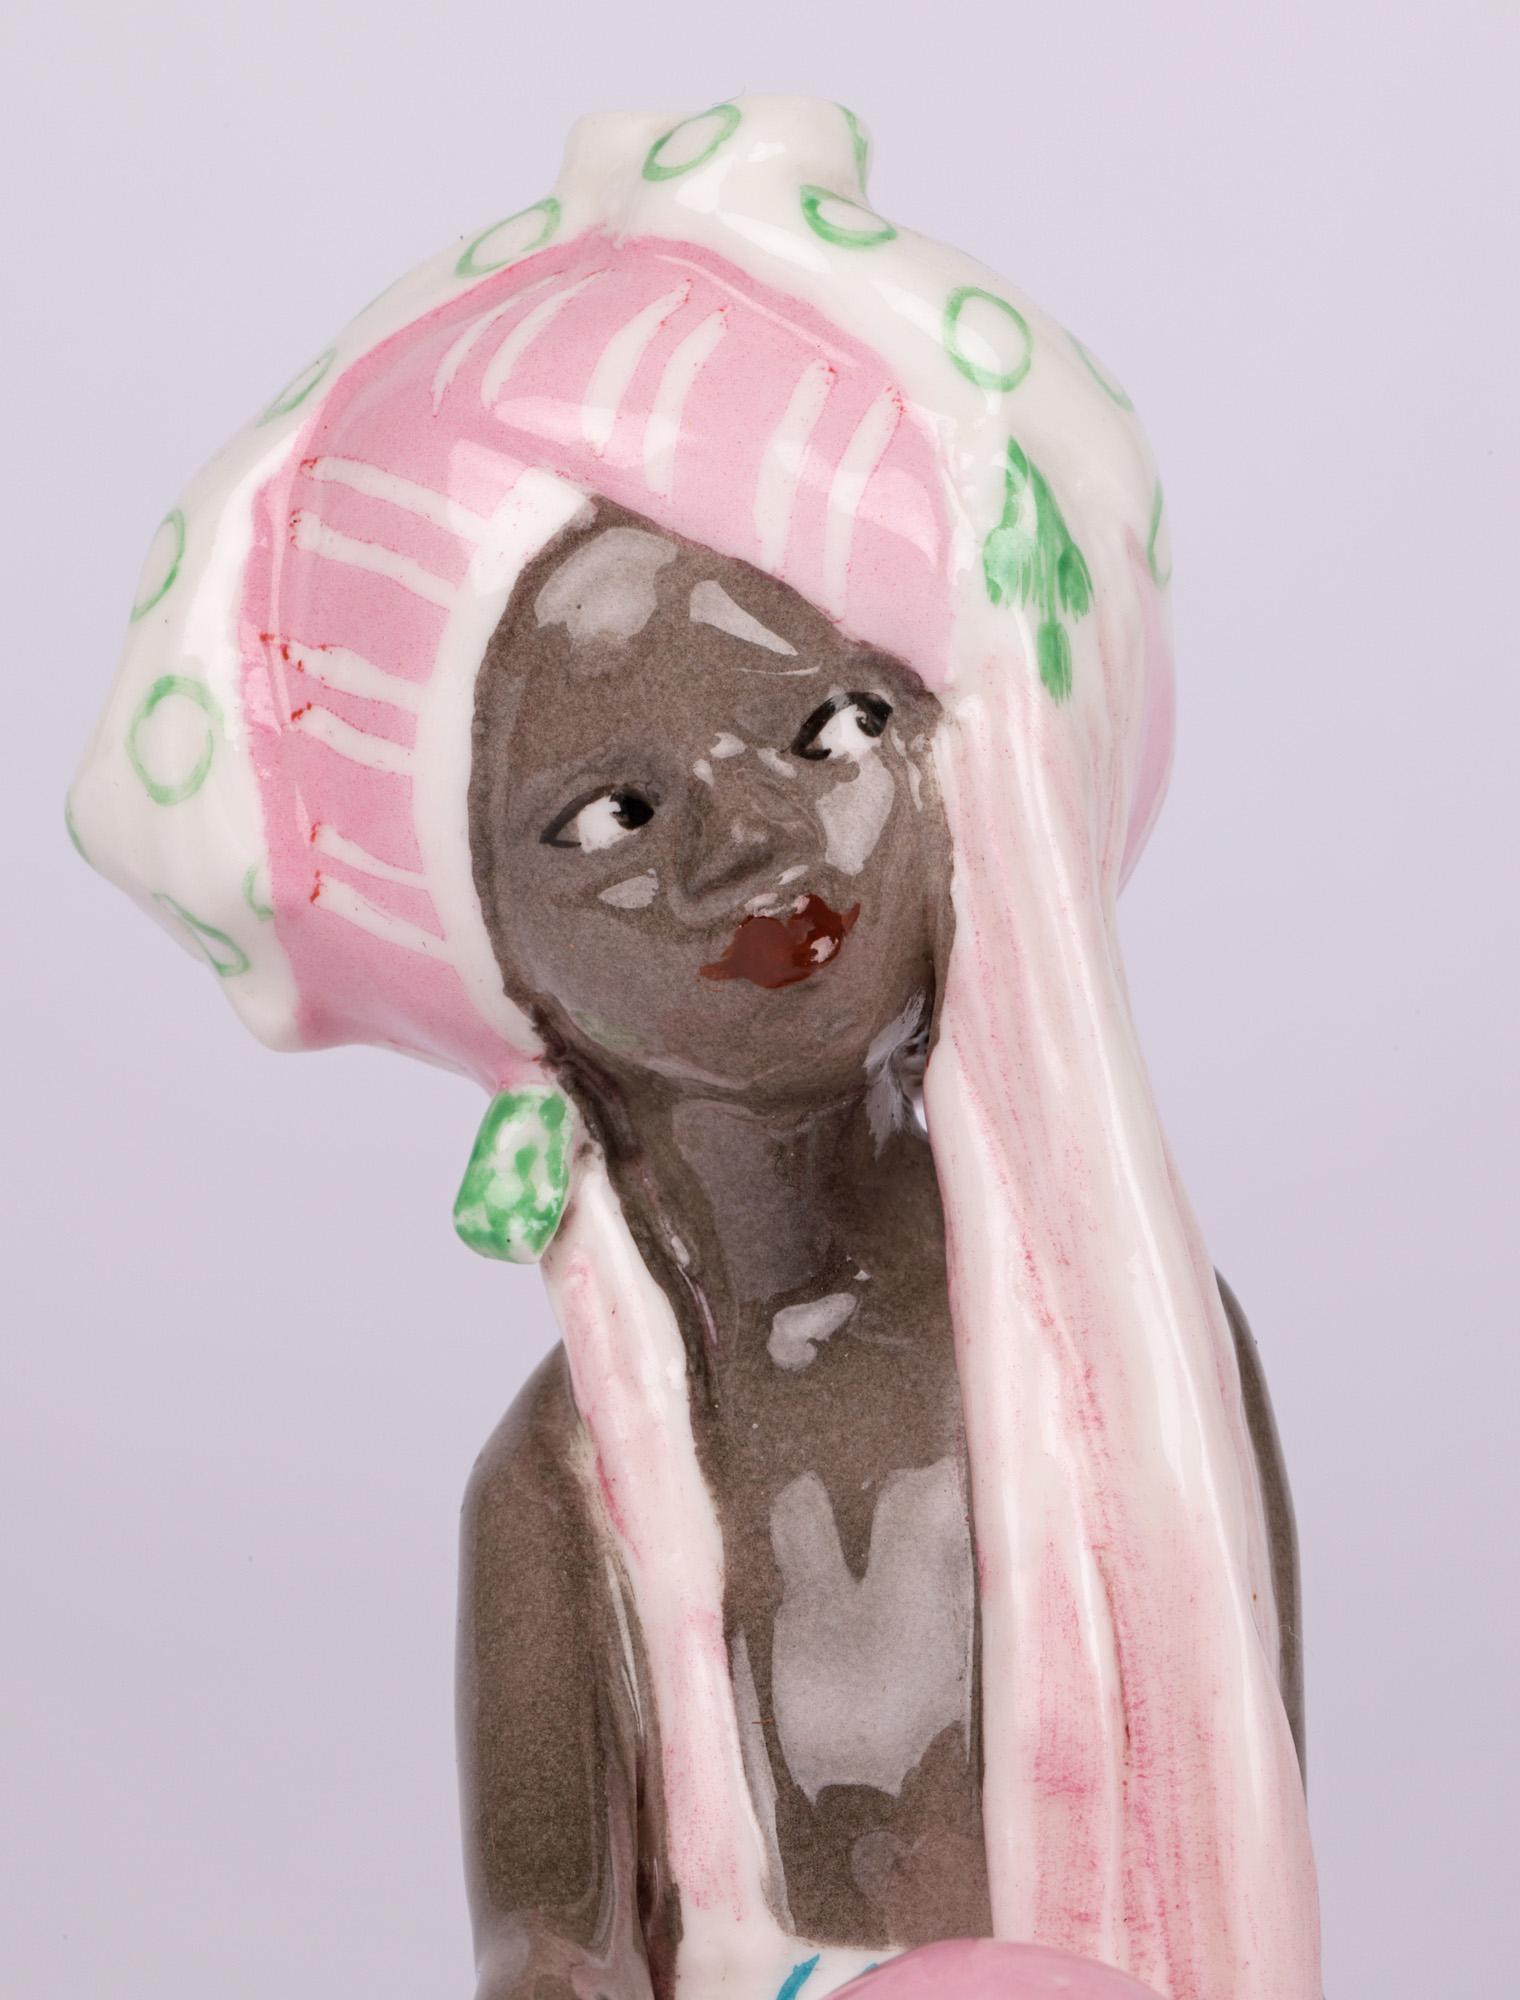 Ravissante figurine en porcelaine anglaise Art Déco intitulée Le Voleur en robe du Moyen-Orient, fabriquée par Royal Worcester et datée de 1936. La figure d'une jeune fille, assise sur un socle rectangulaire, porte une coiffe en forme de turban et